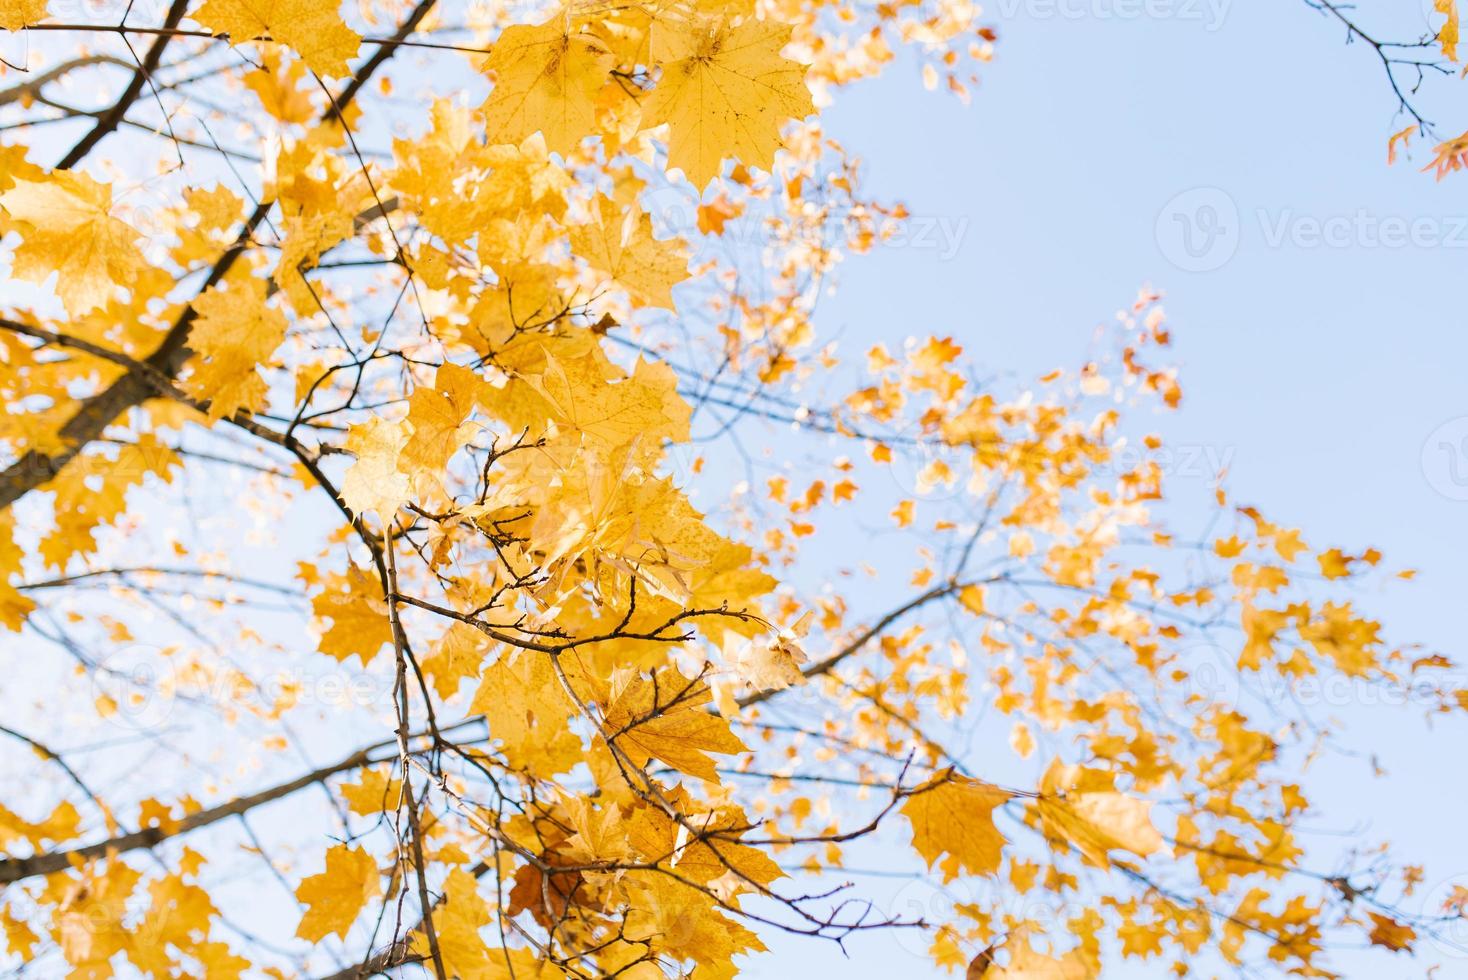 amarillo arce hojas en el otoño temporada en contra el azul cielo. hermosa naturaleza escena. foto